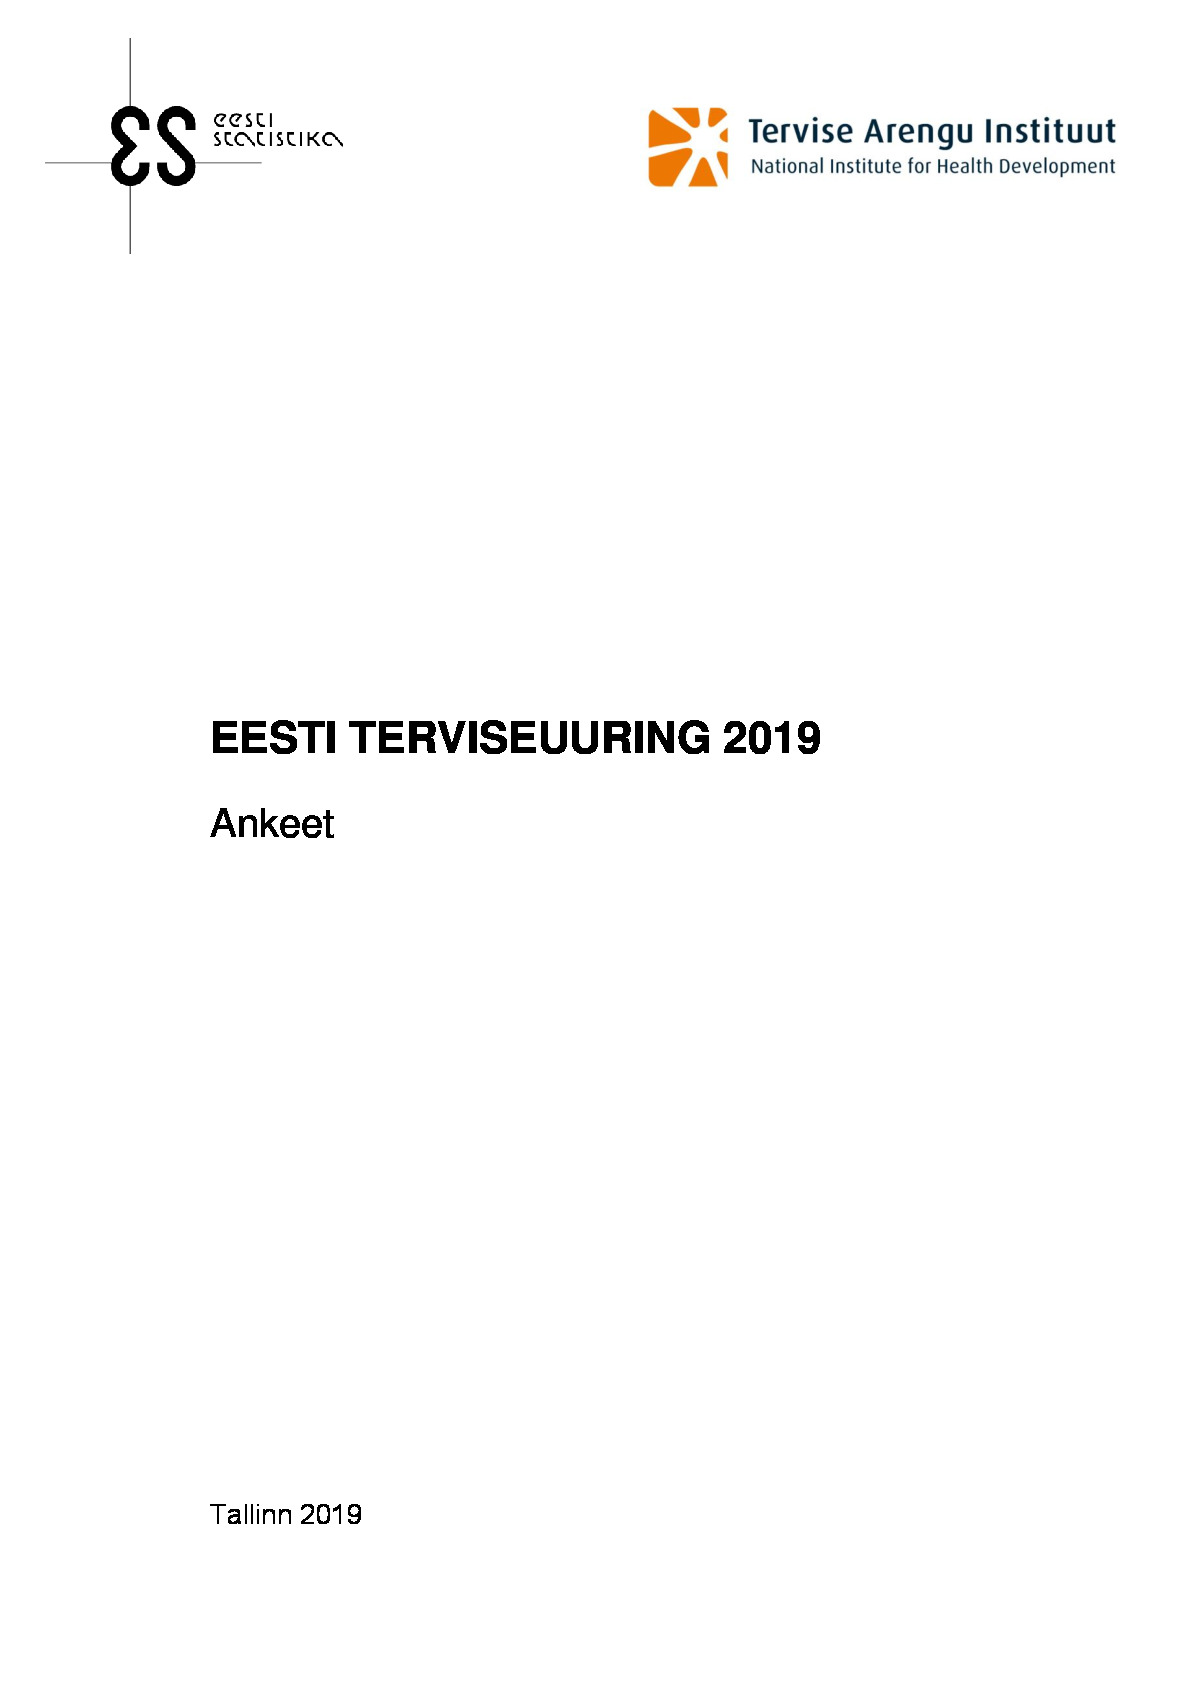 Eesti Terviseuuring 2019 ankeet eesti k